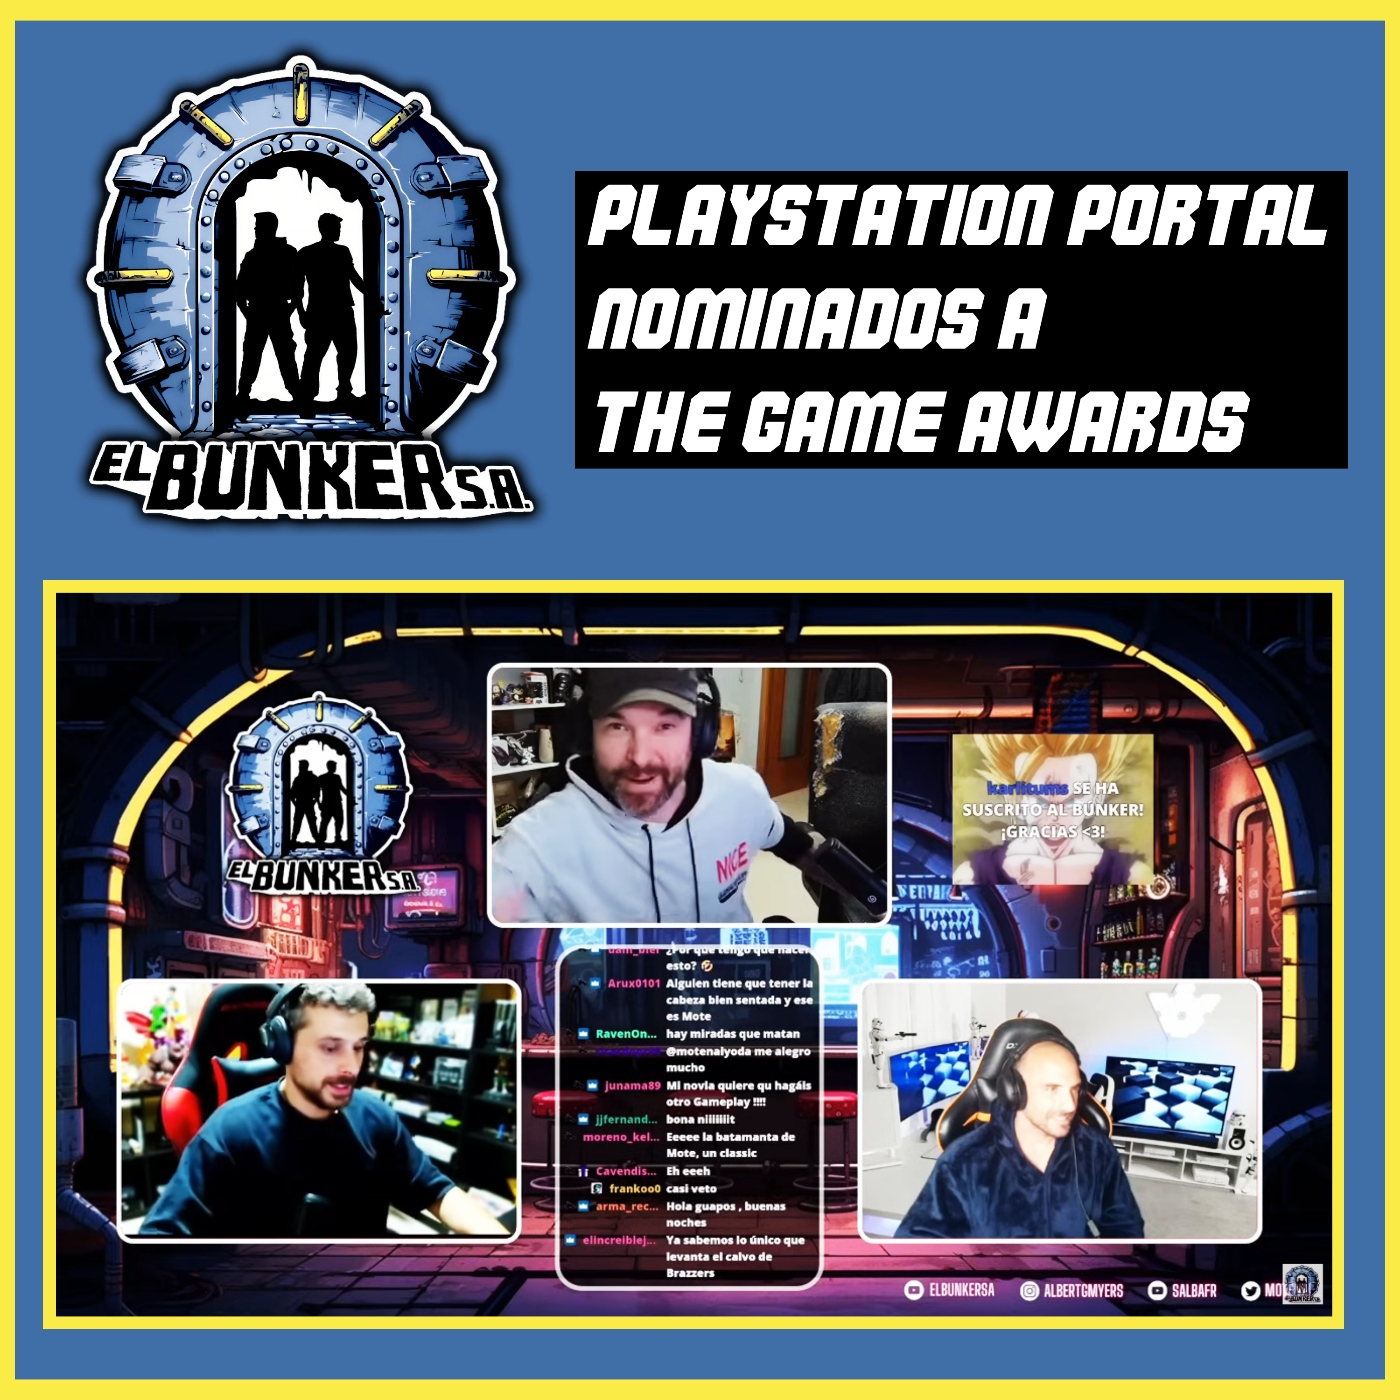 EL BUNKER: Nominados THE GAME AWARDS y PlayStation PORTAL...